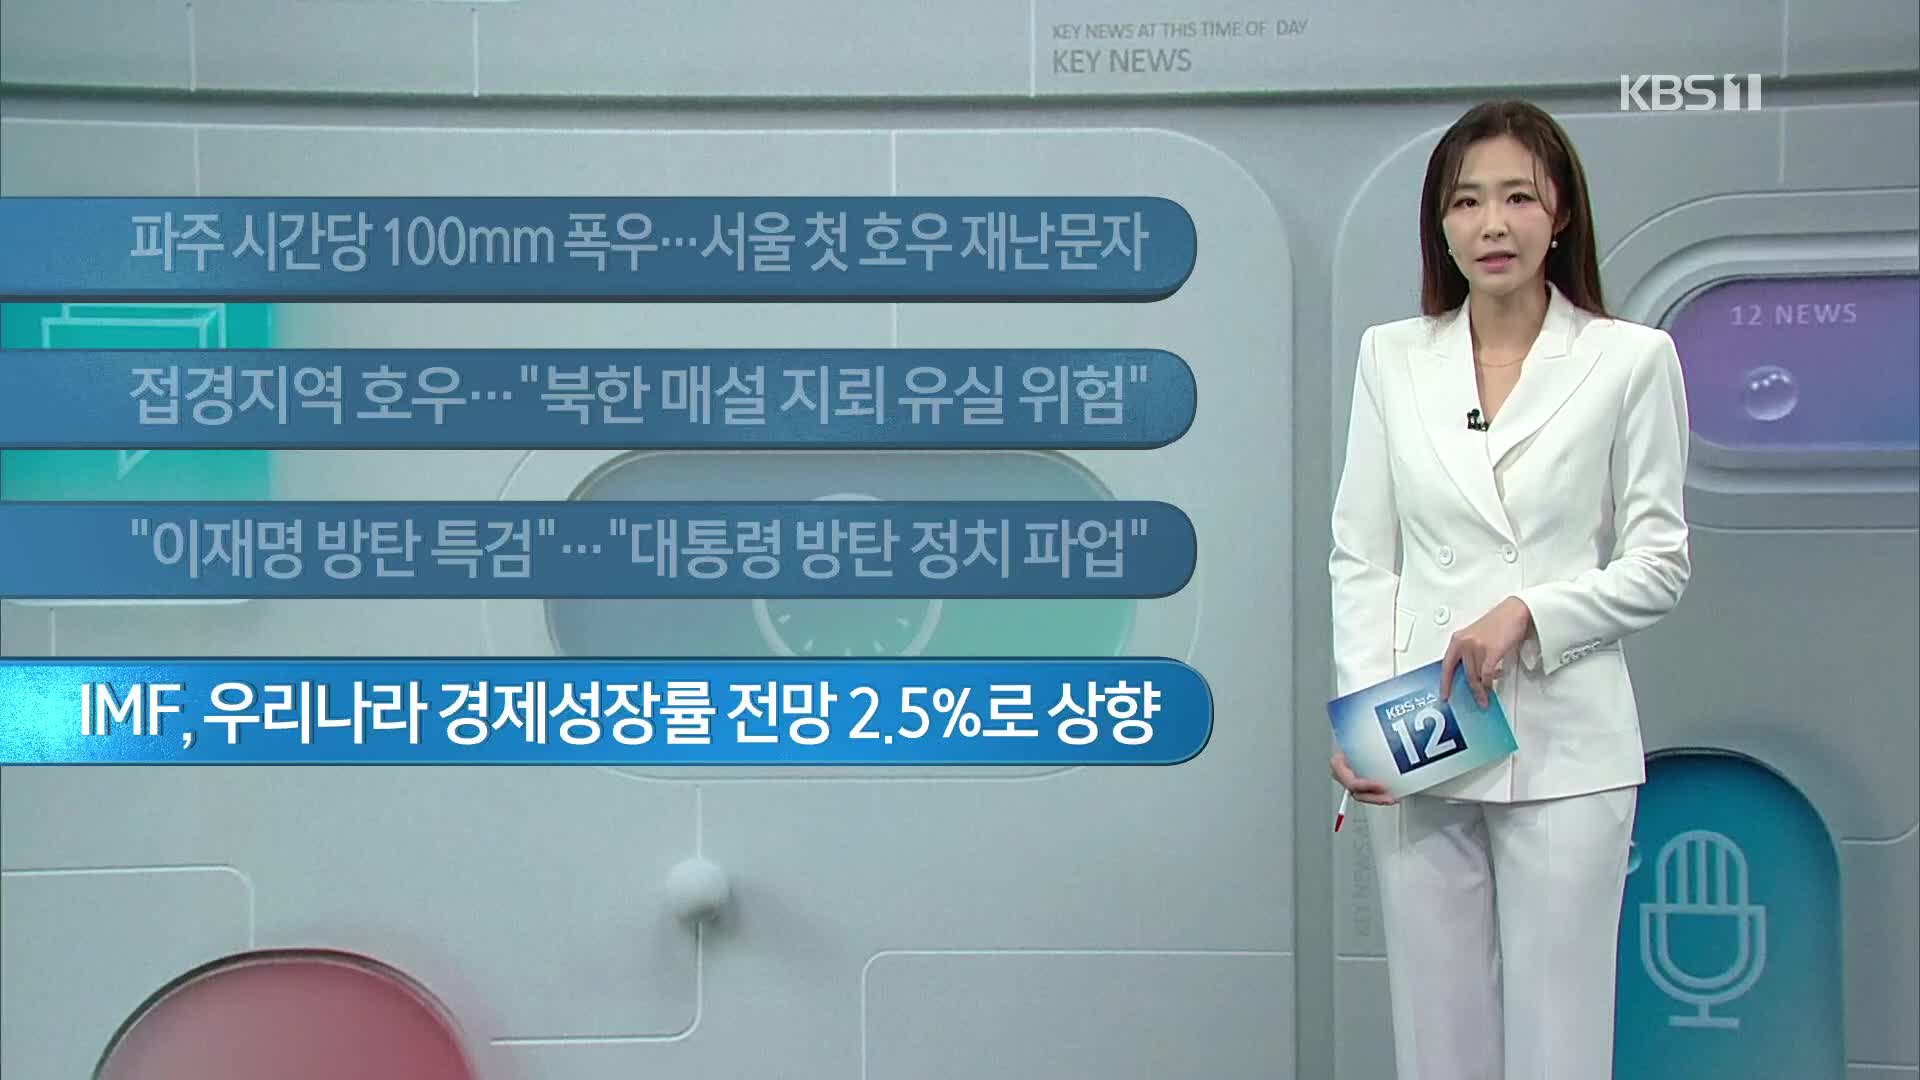 [이 시각 주요뉴스] 파주 시간당 100mm 폭우…서울 첫 호우 재난문자 외